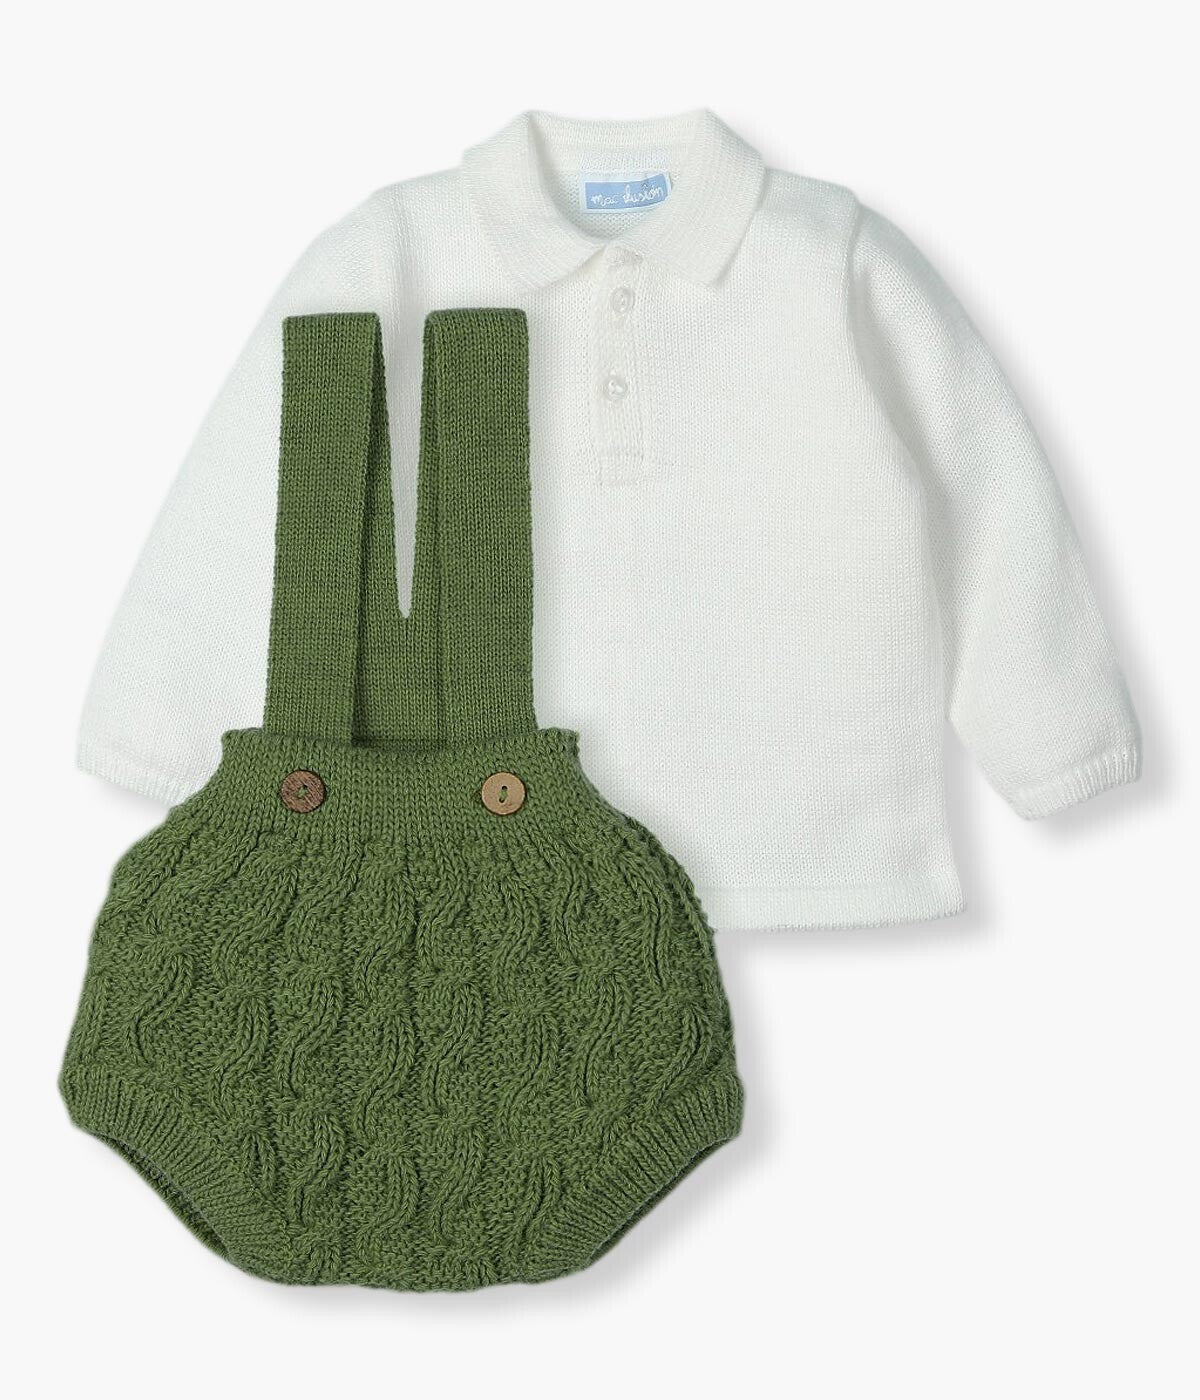 Conjunto de Malha com Lã para Bebé 2pc - Branco e Verde